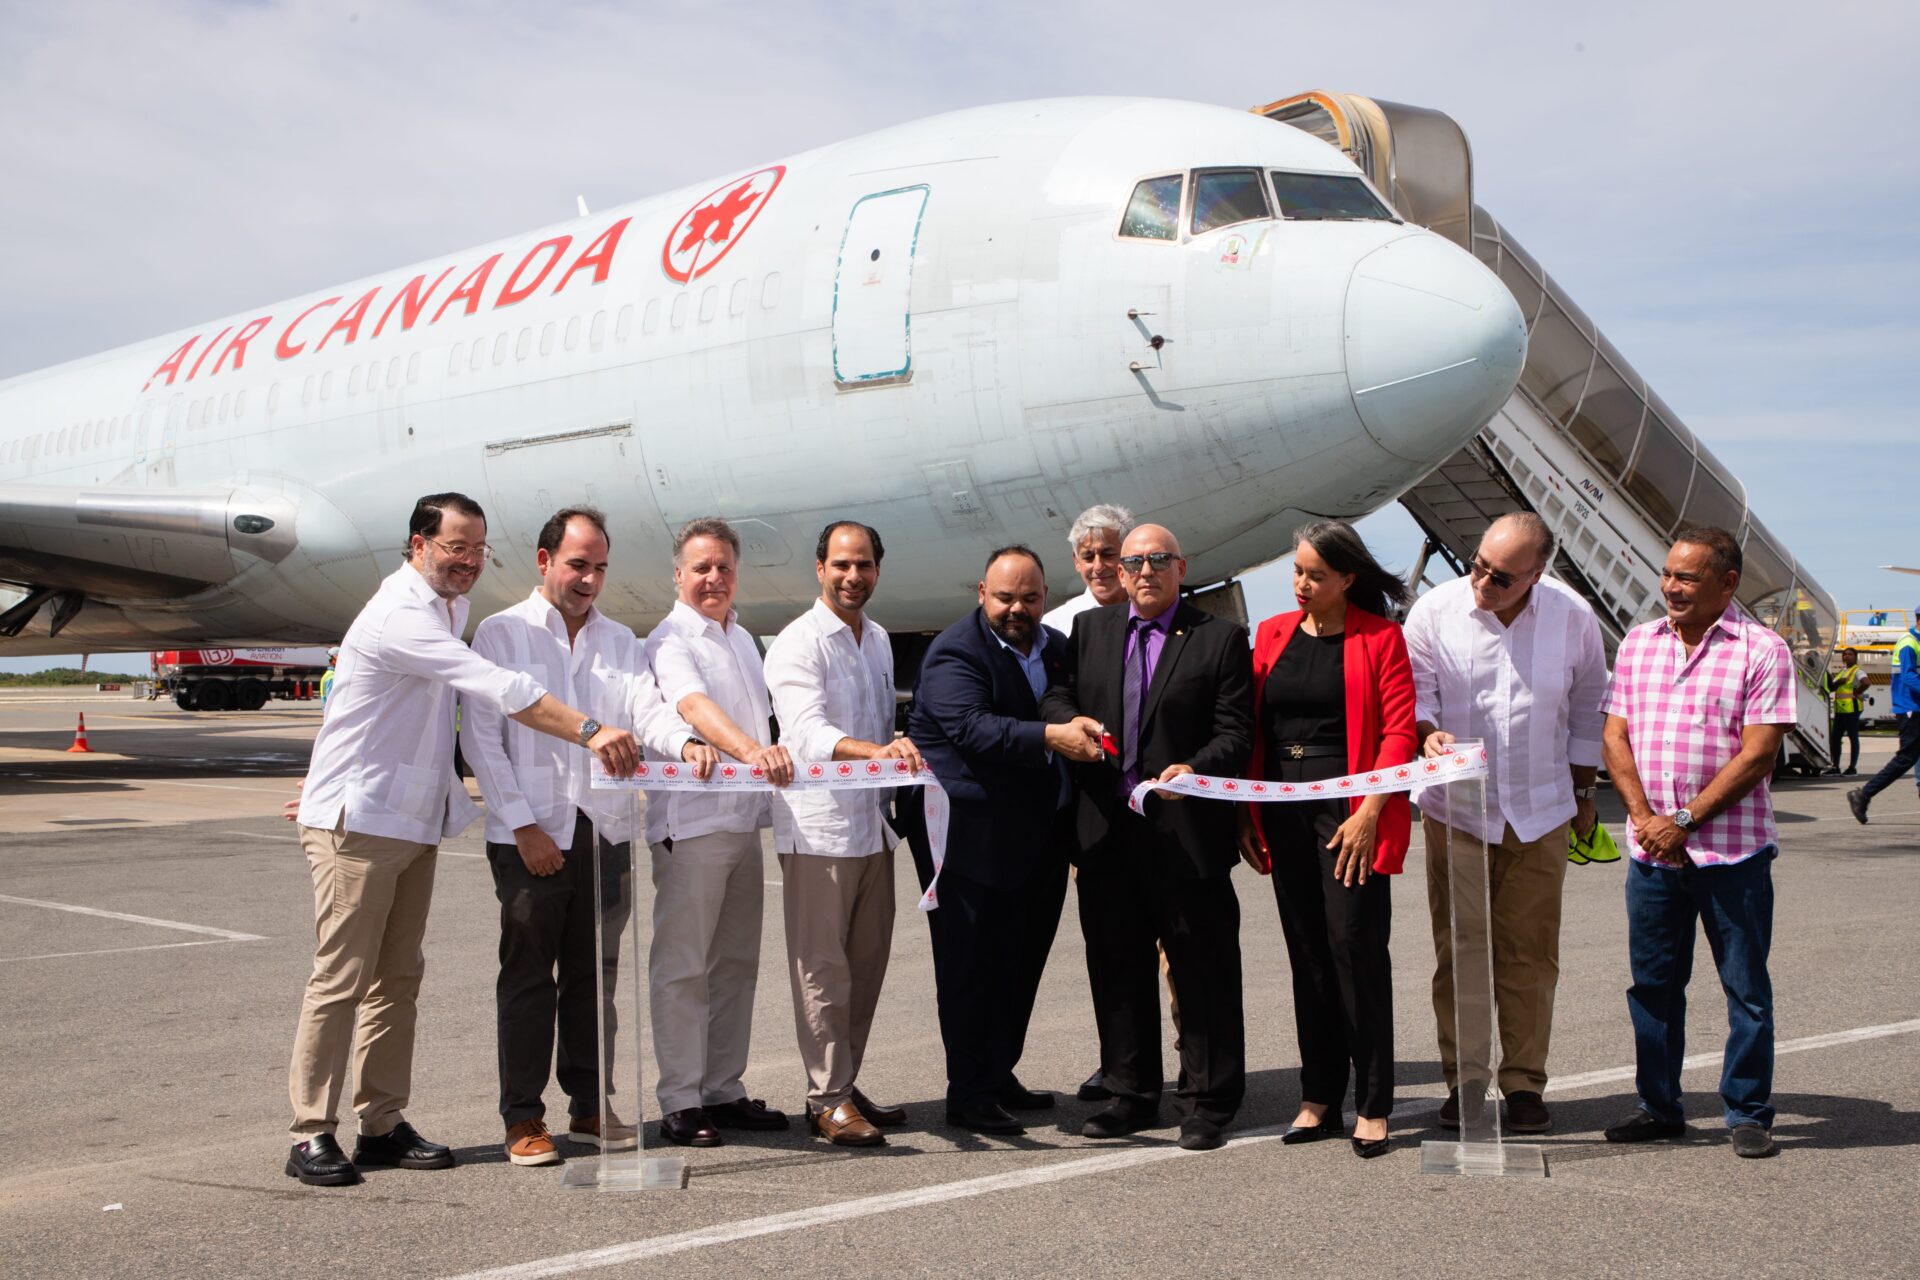 Air Canadá Cargo inaugura servicio de carga en aeropuerto Punta Cana